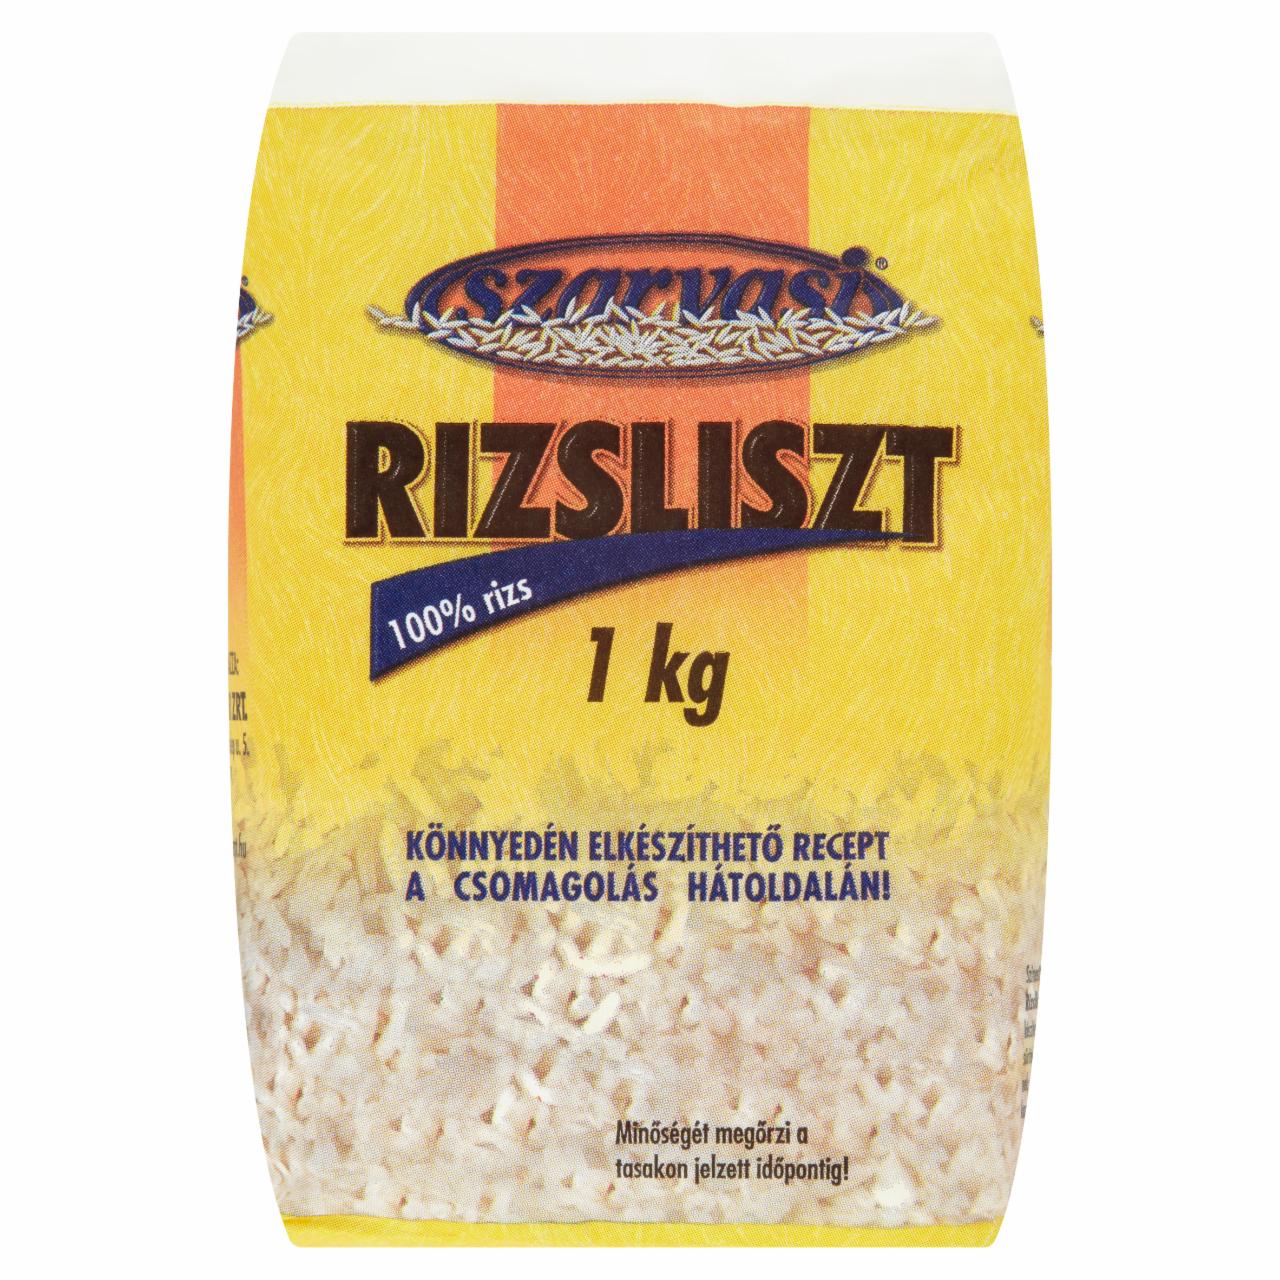 Képek - Szarvasi rizsliszt 1 kg